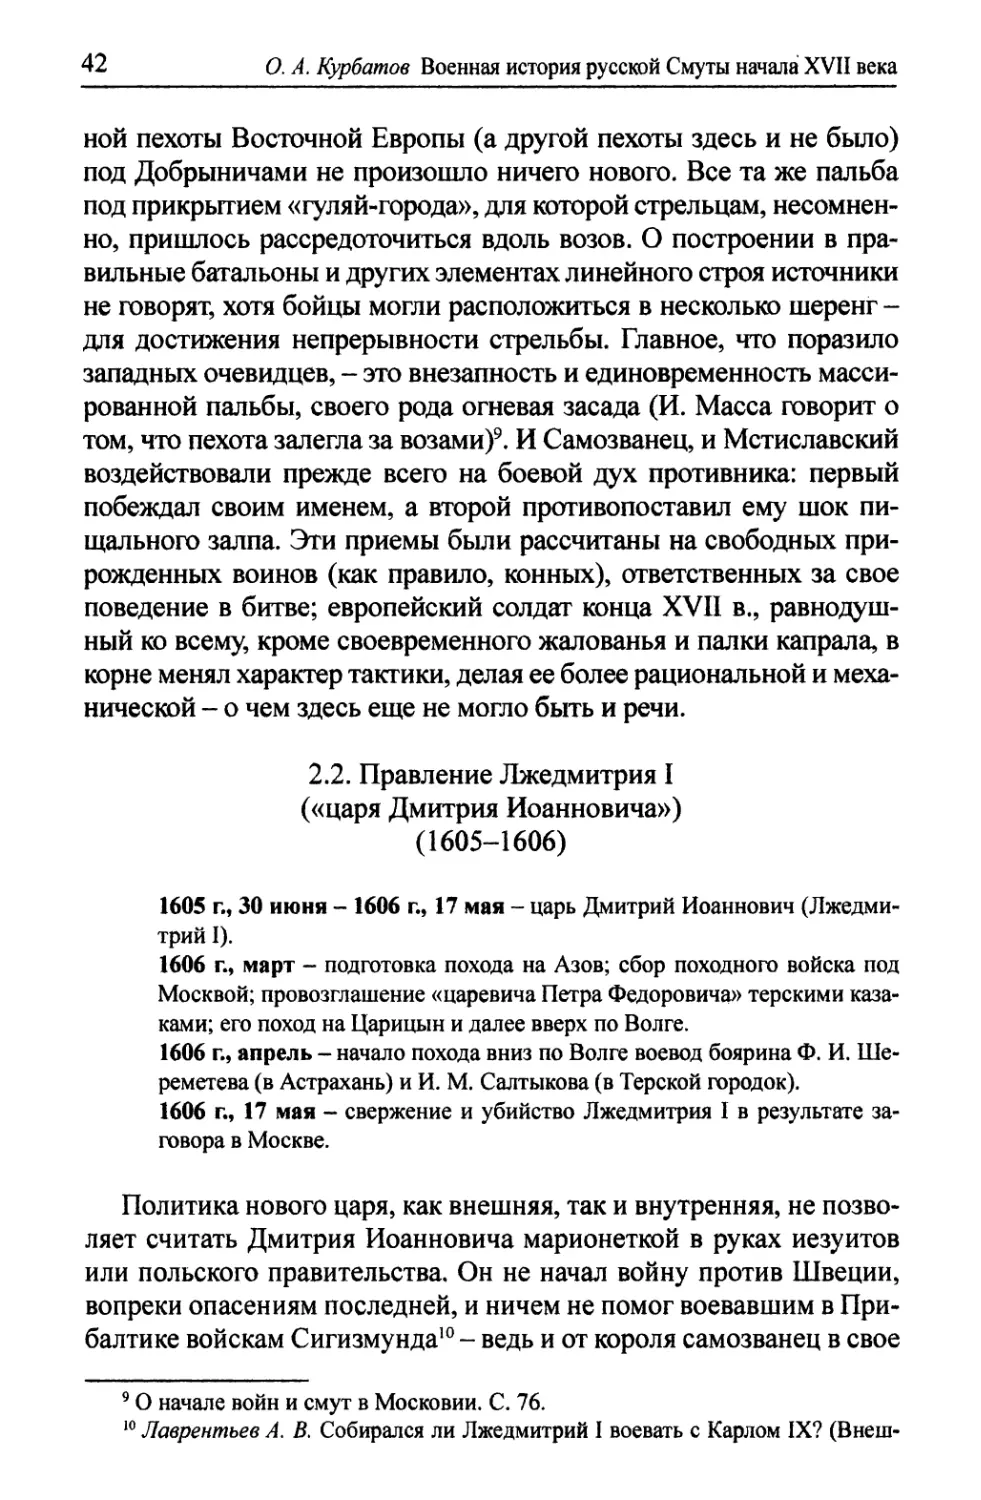 2.2. Правление Лжедмитрия I, или «царя Дмитрия Иоанновича» (1605-1606)